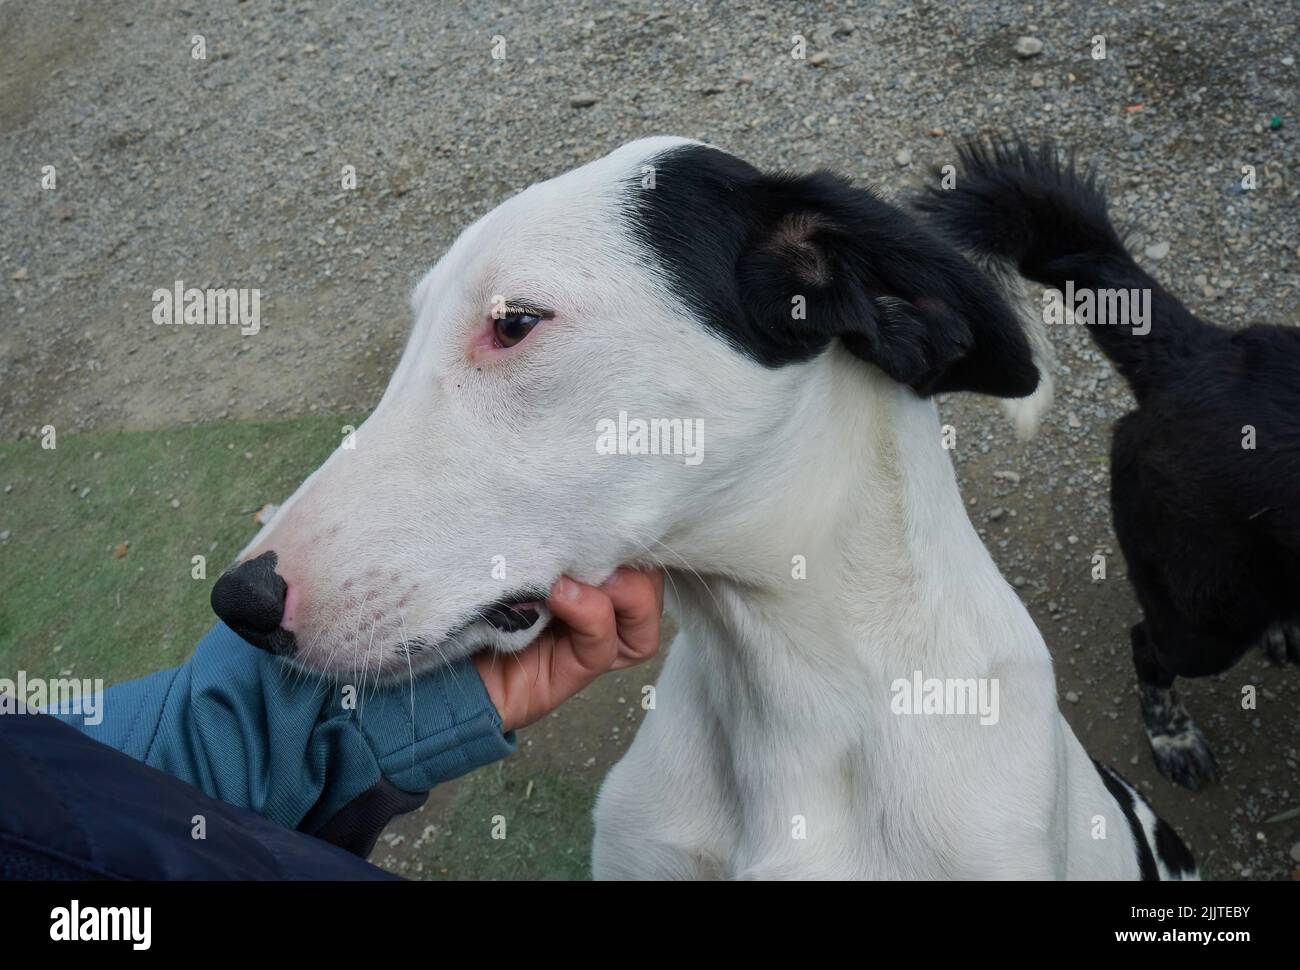 Un humain apaisant un chien fourrure blanche et des oreilles noires vivant dans un abri pour chien Banque D'Images